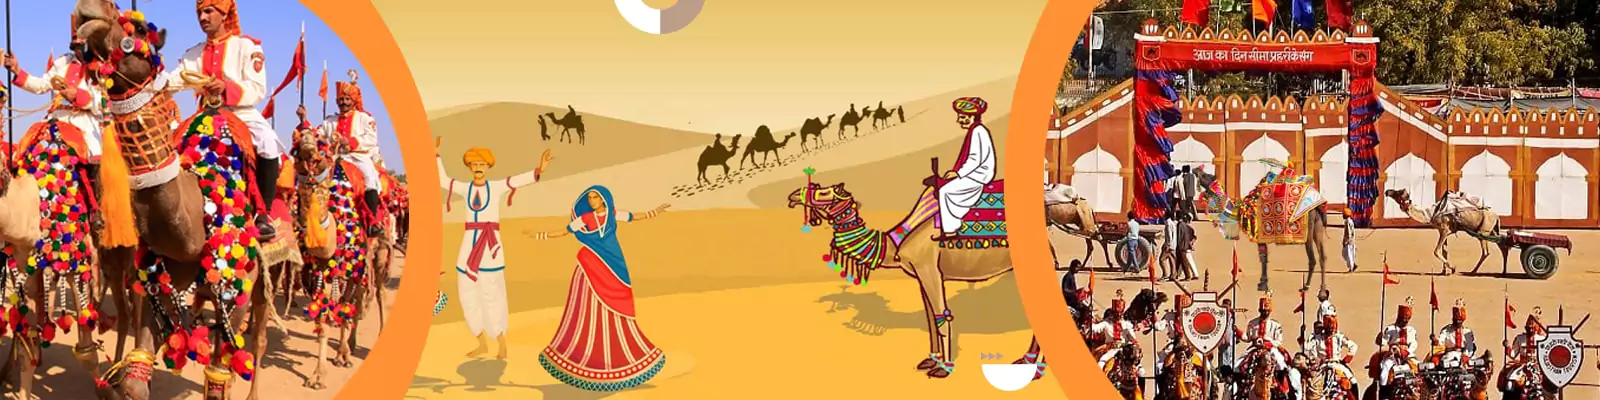 rajasthan desert festival tour package